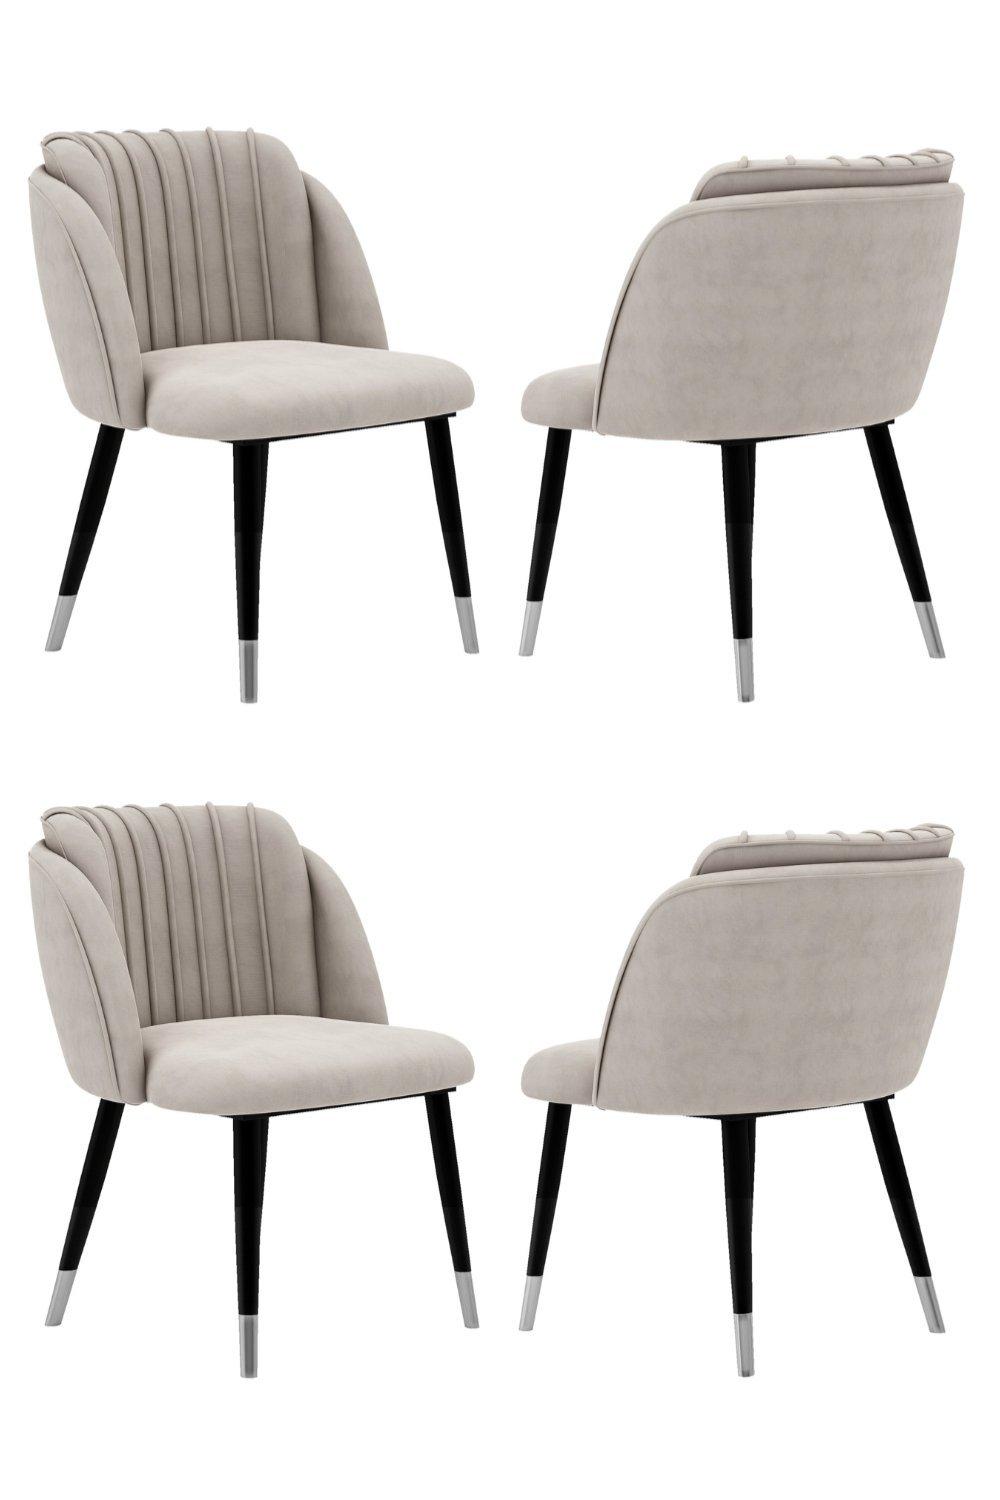 Set of 4 'Milano Velvet Dining Chair' Upholstered Dining Room Chair